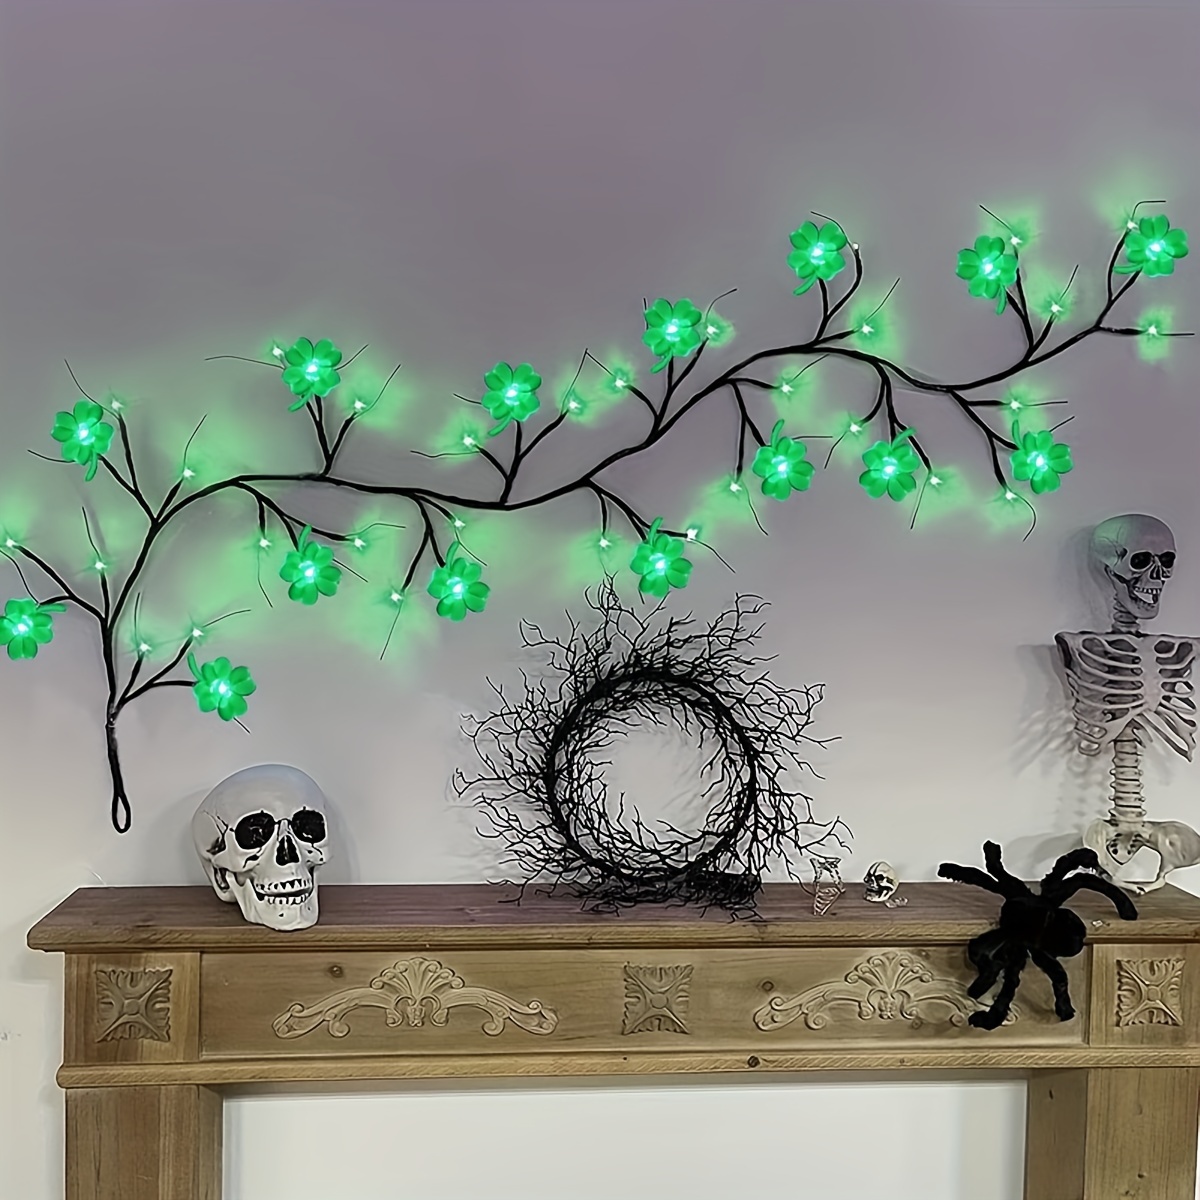 LED-Baum-Licht-Weihnachtsdekoration 108 LED-Zweig-Baum mit